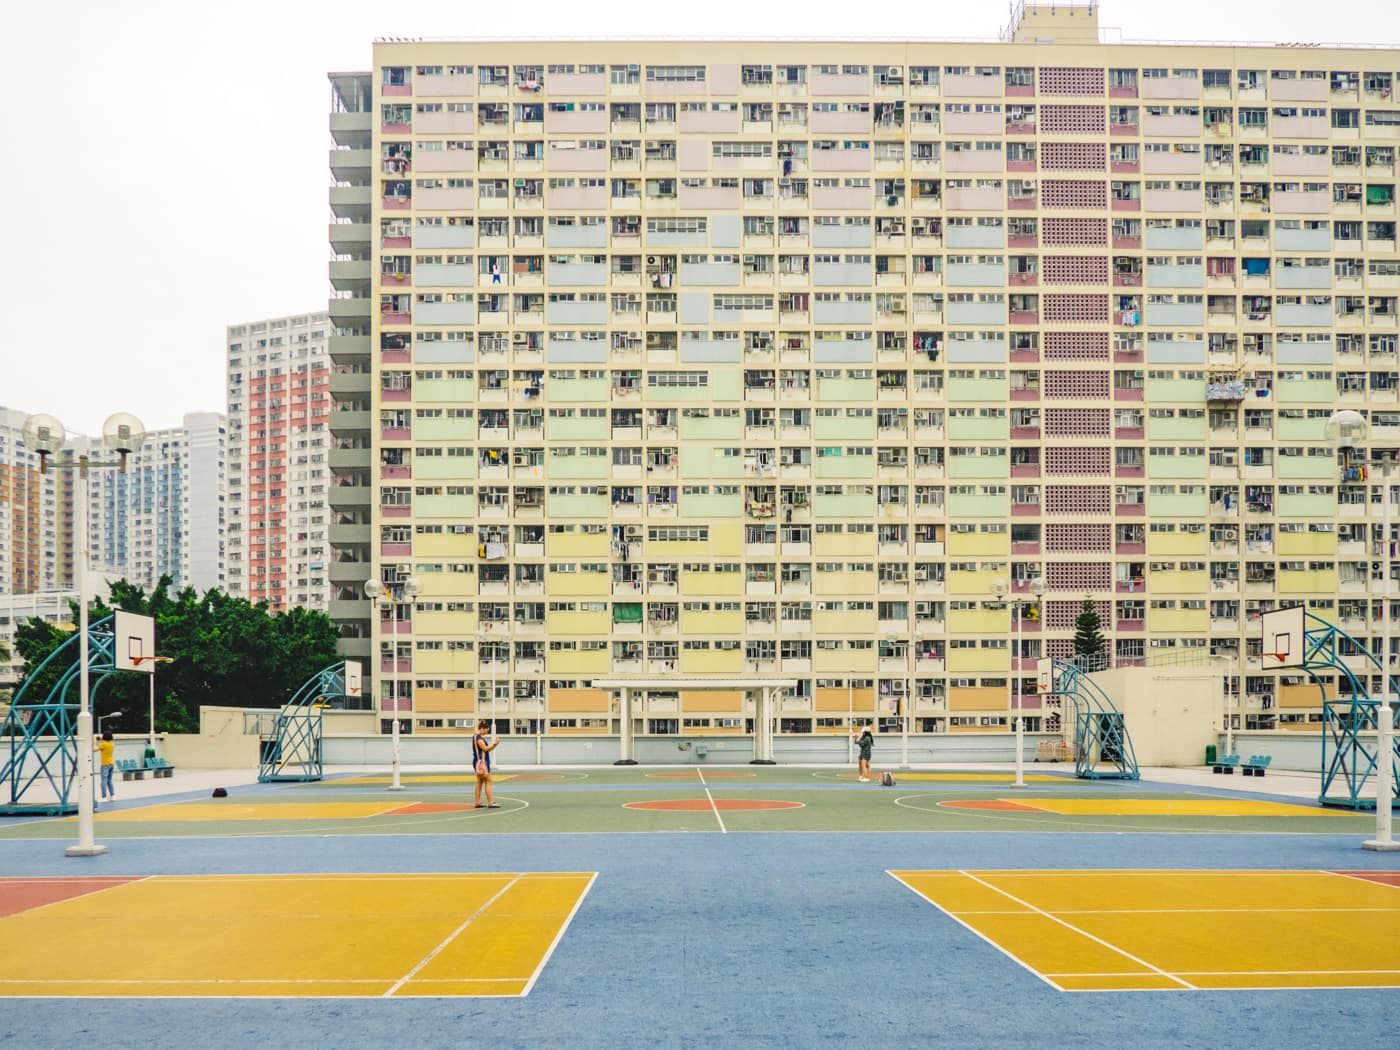 Hong Kong - Rainbow Estate - Basketball court full view